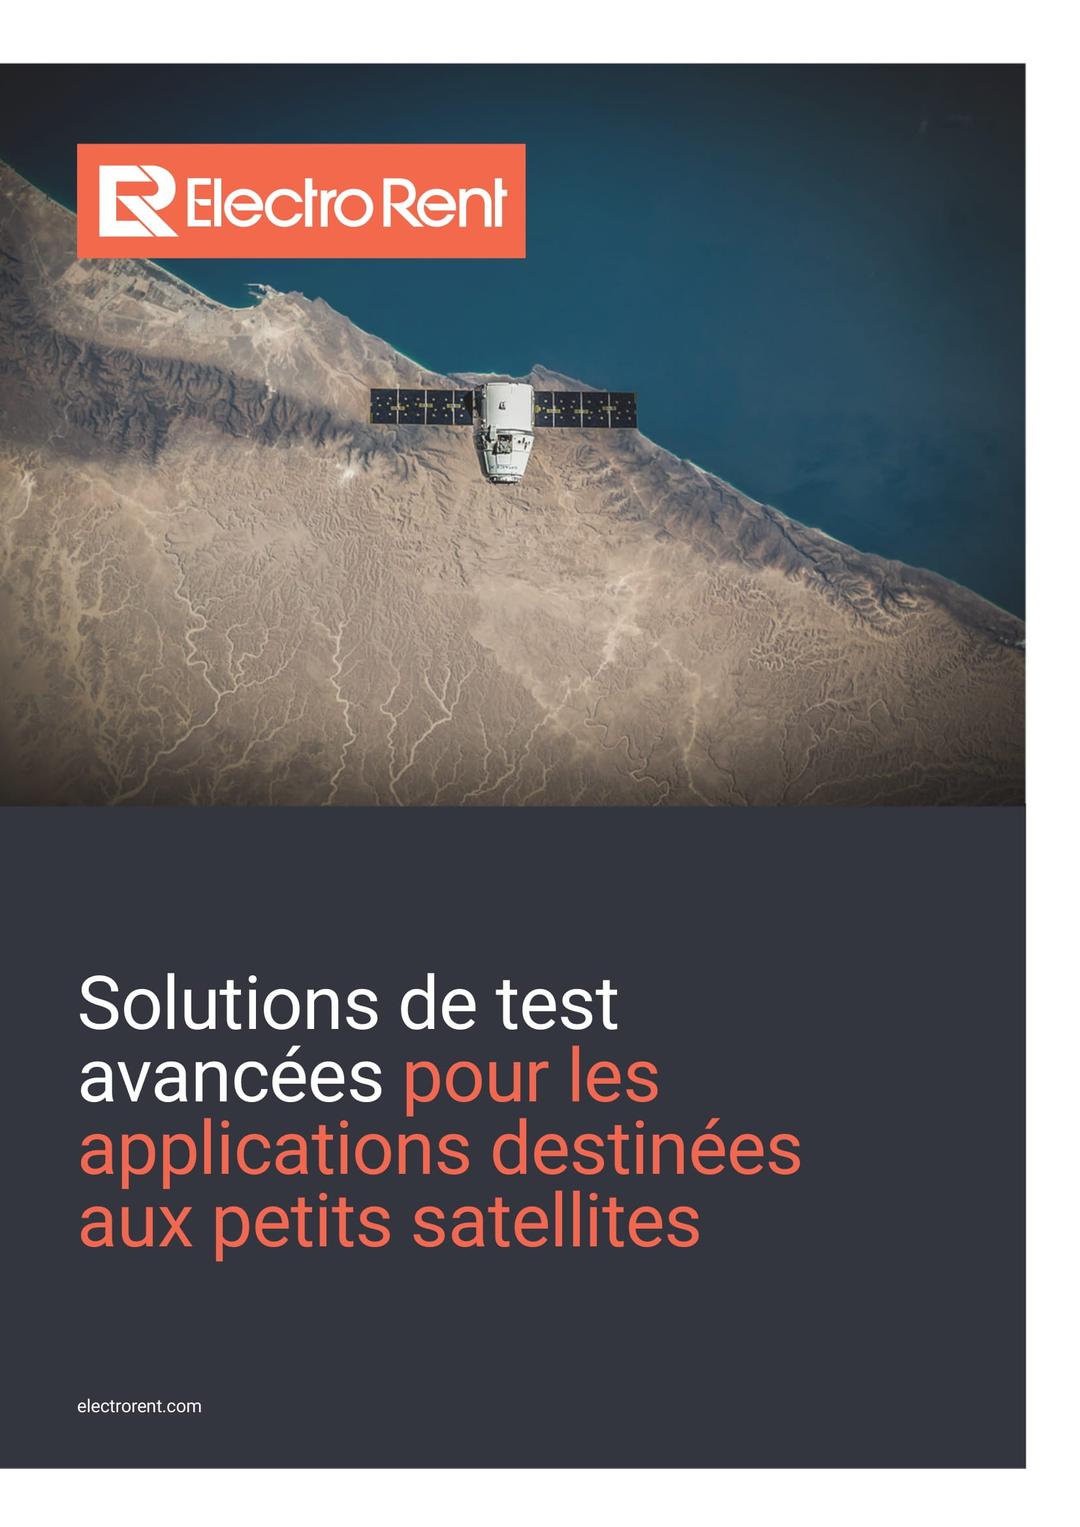 EU FR Satellites WP, image